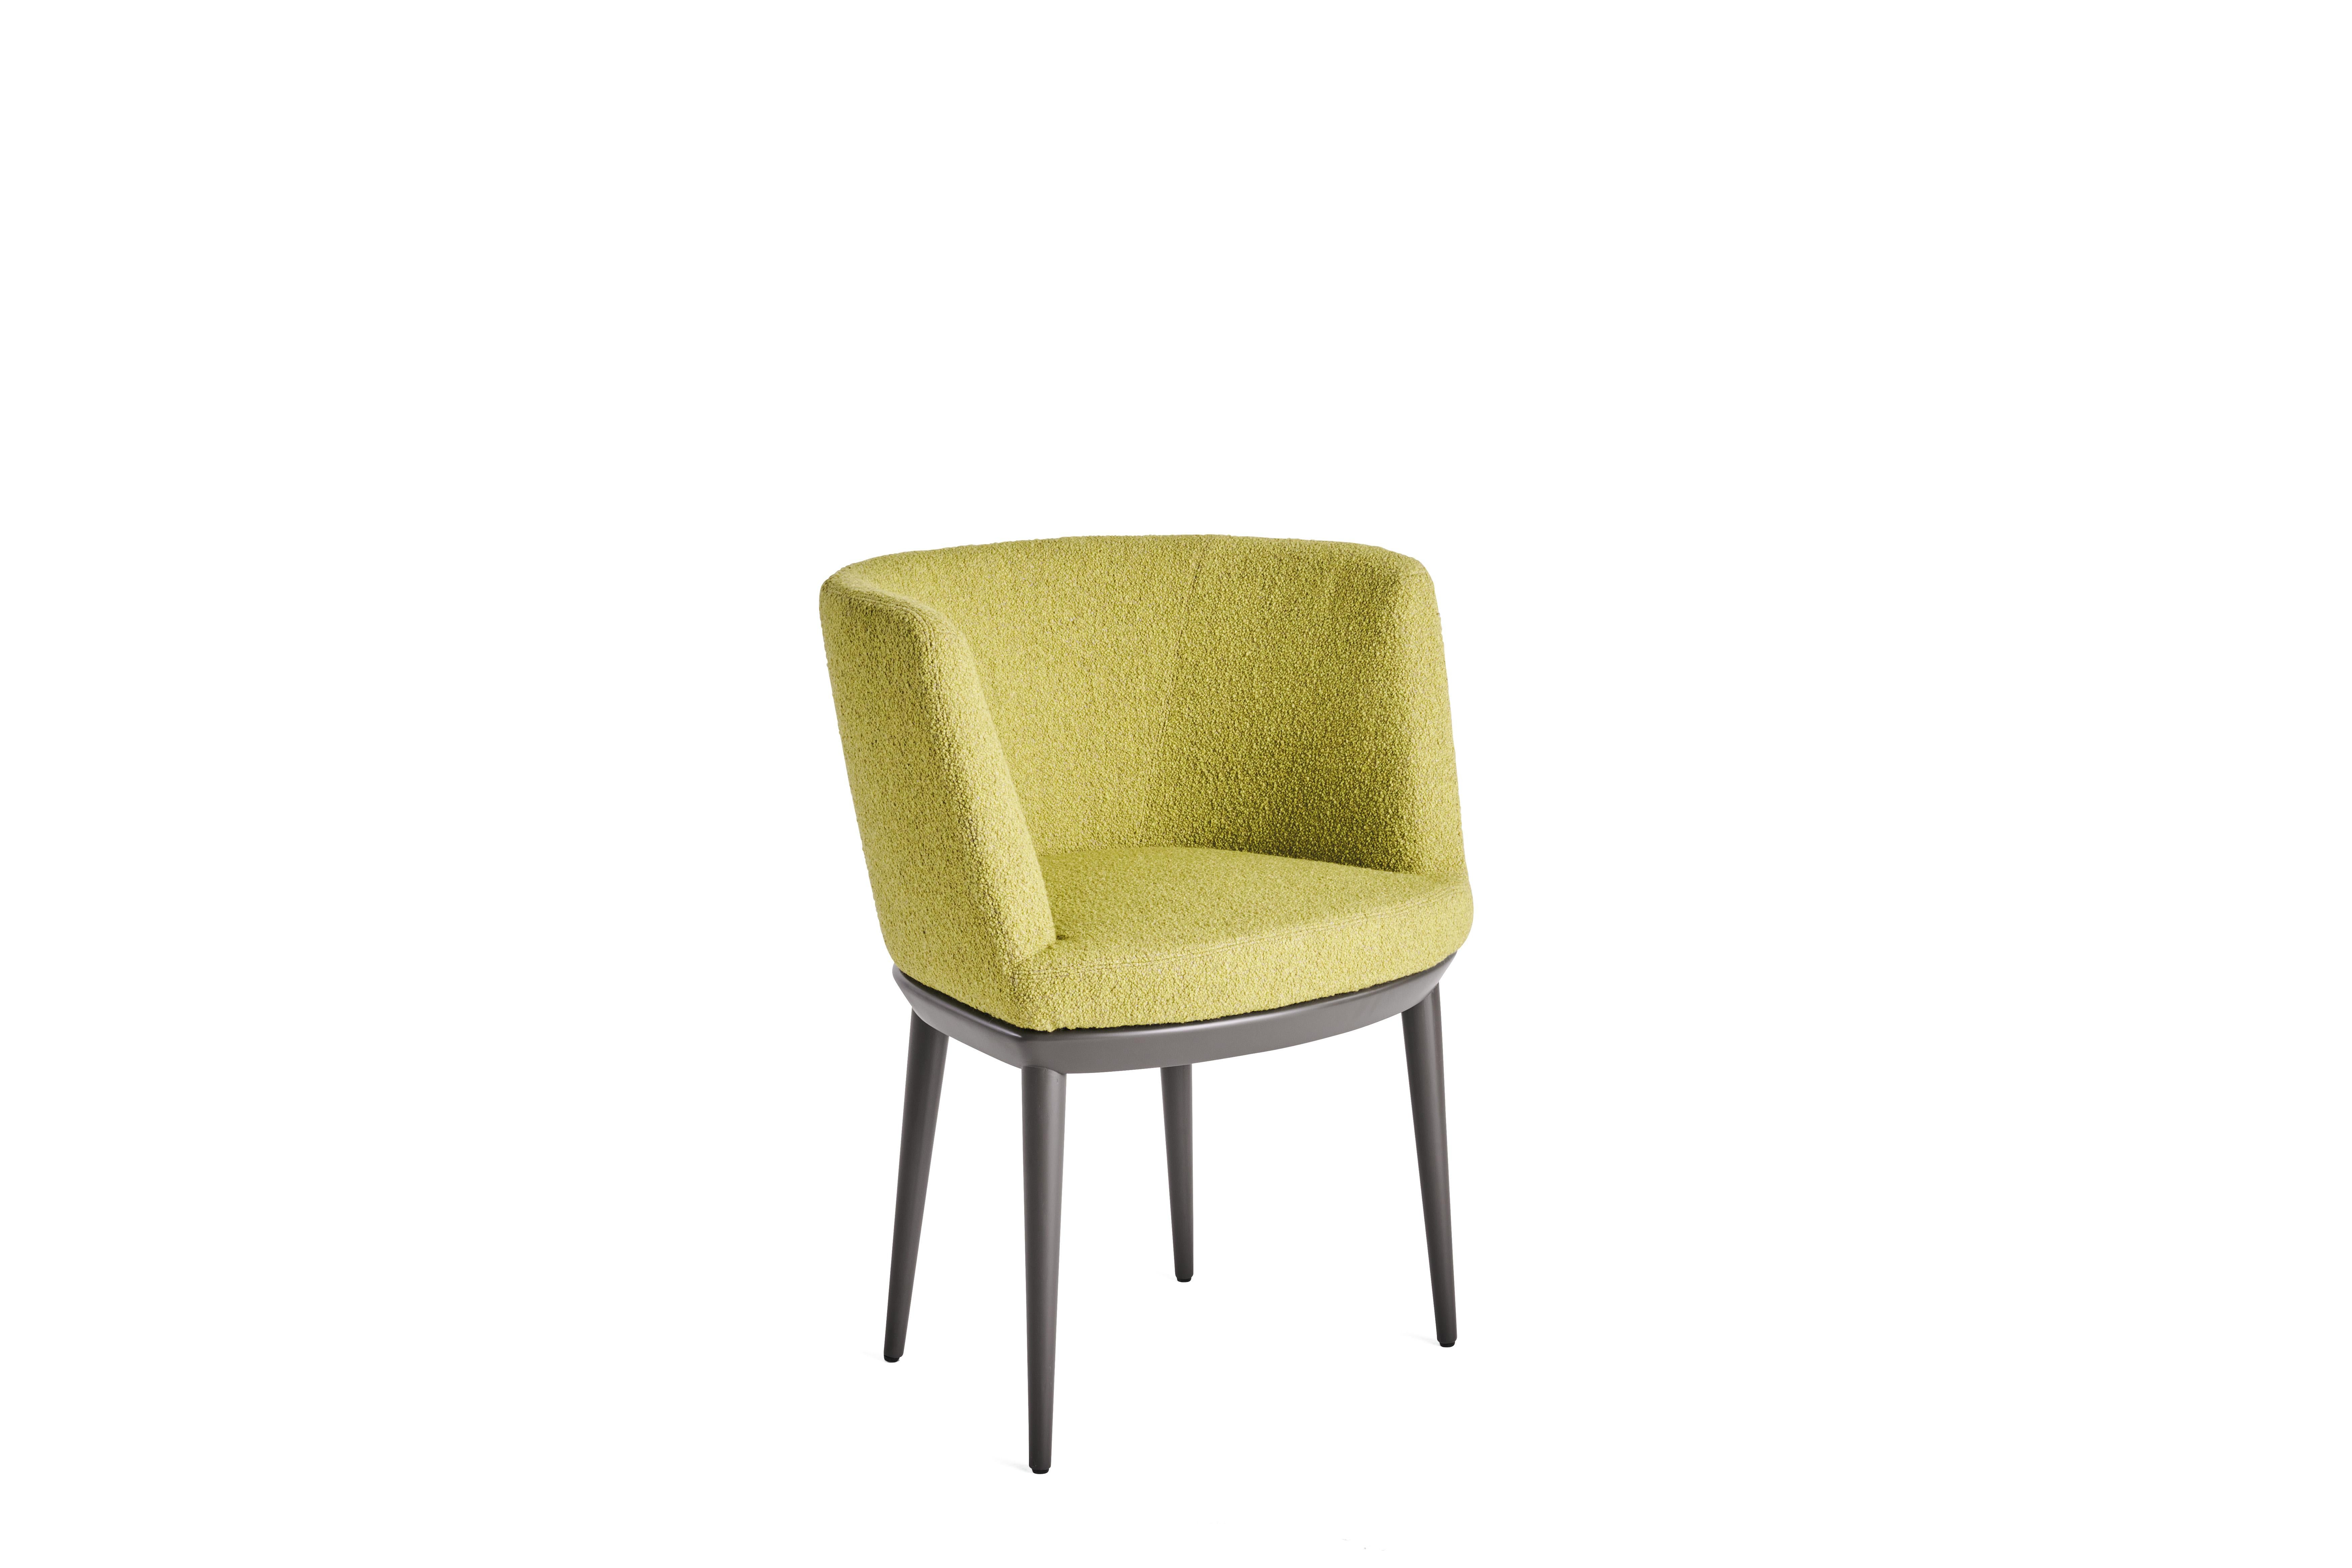 Der bequeme Sessel Bare zeichnet sich durch seine Retro-Linien und seine anschmiegsame Rückenlehne aus, die mit den ikonischen Stoffen von Etro Home Interiors bezogen ist. Der Stuhl hat eine Struktur aus Tannenholz und Beine aus massiver Esche mit